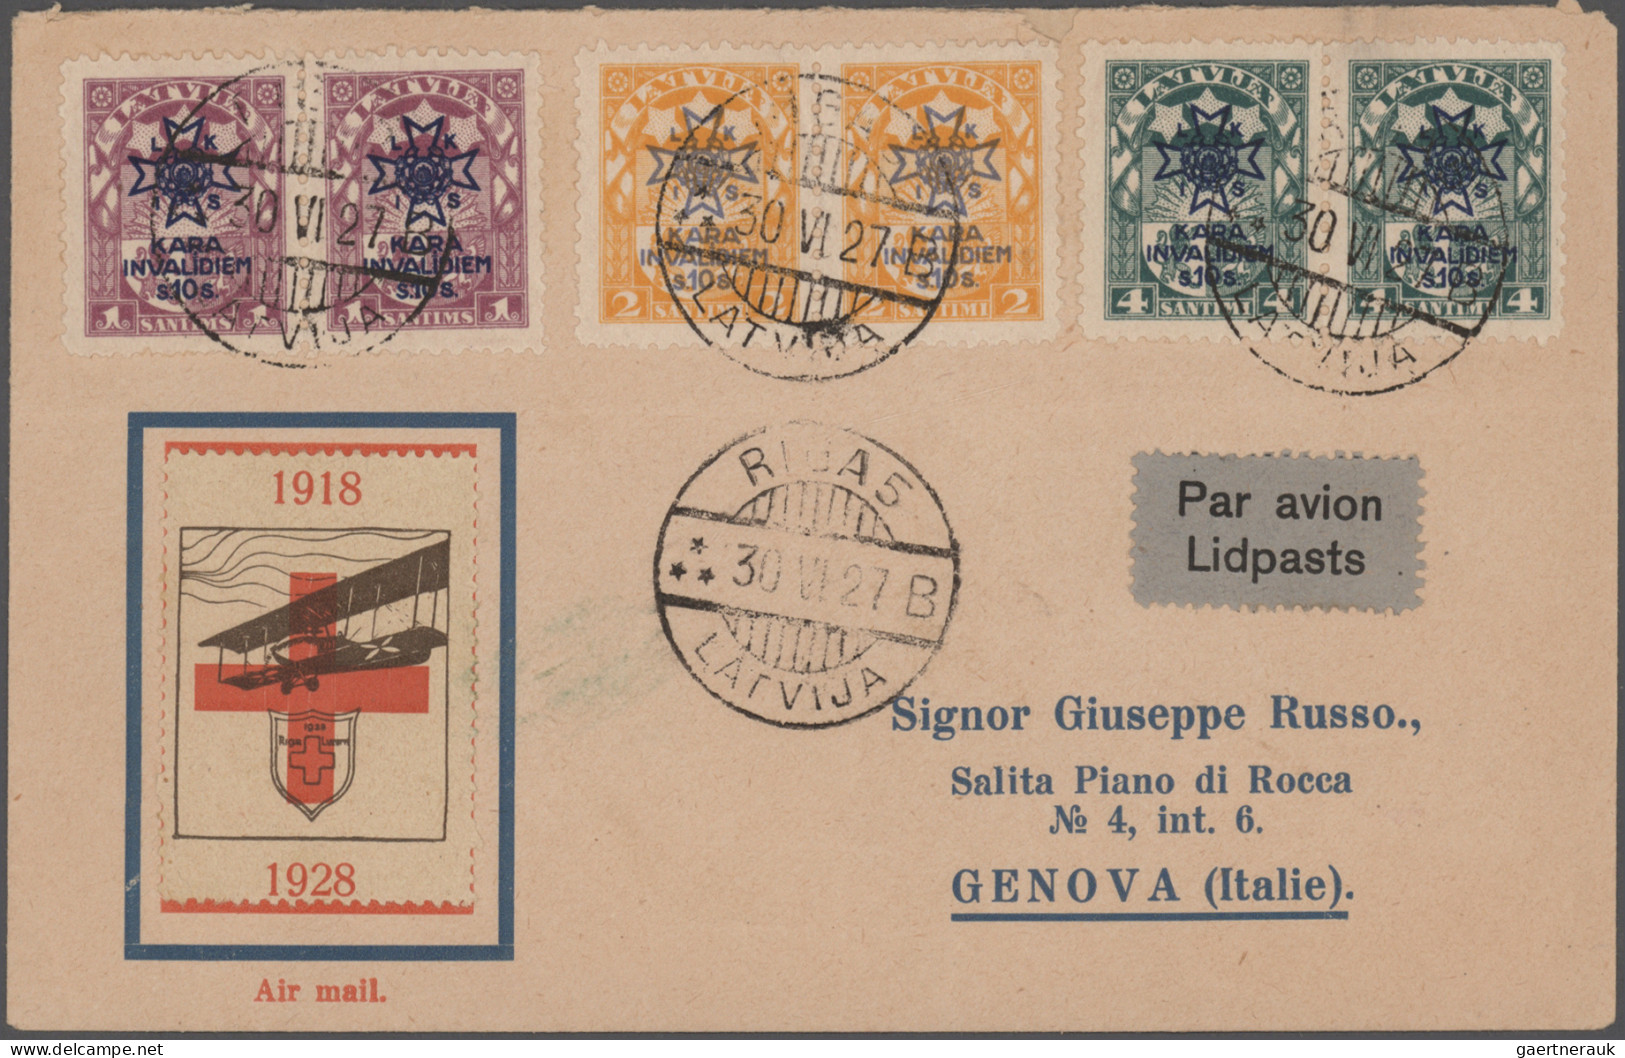 Airmail - Europe: 1920/1960er Jahre ca.: Kollektion von 28 Flugpostbelegen aus E